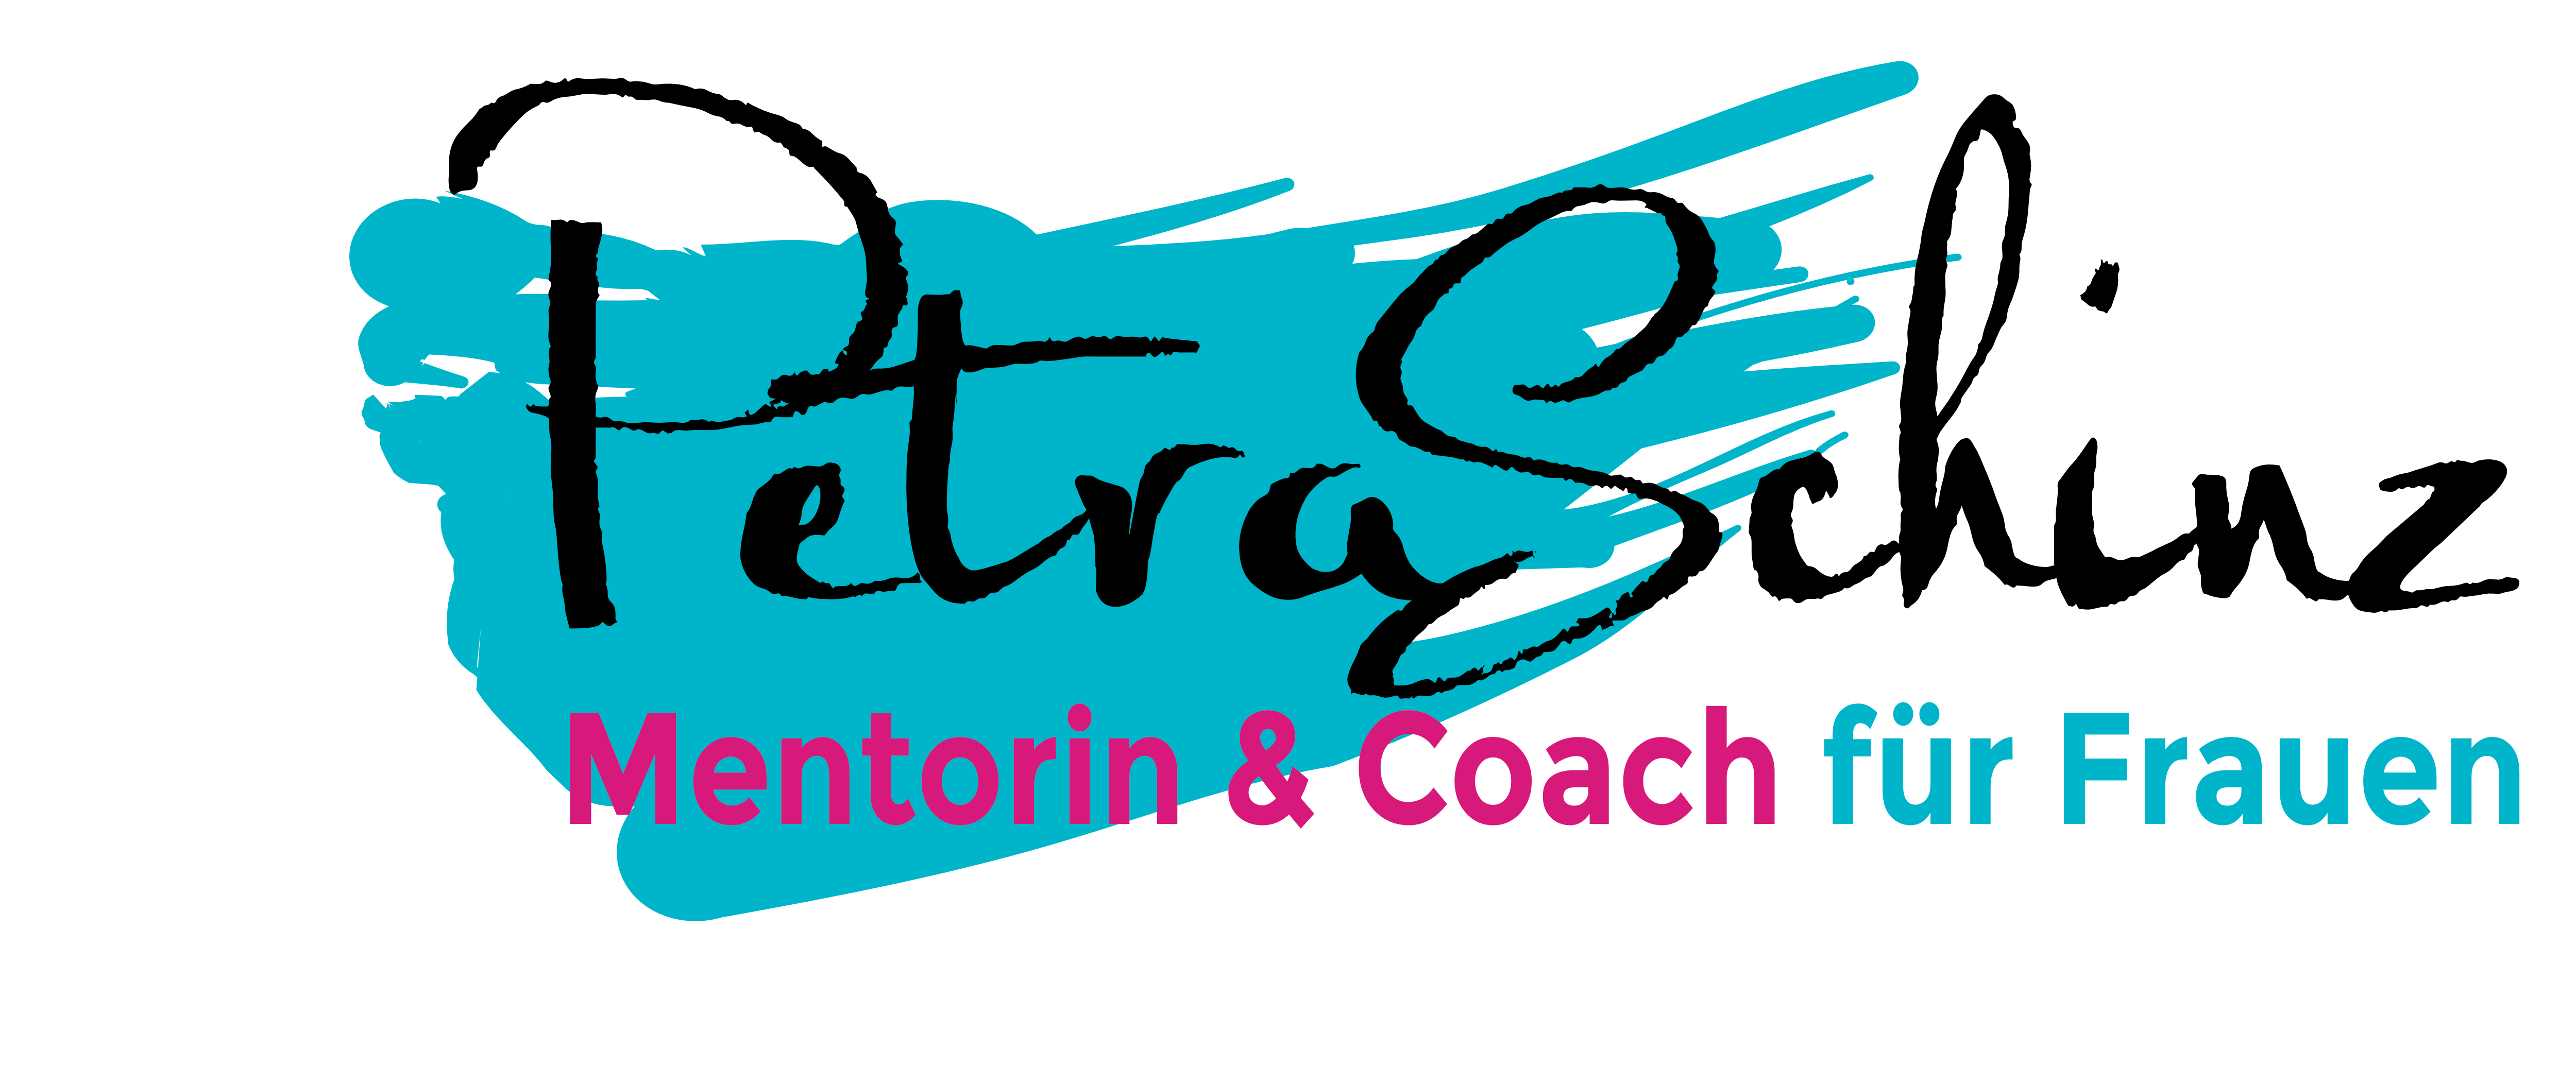 Hier steht das Logo von Petra Schinz Mentorin & Coach für Frauen